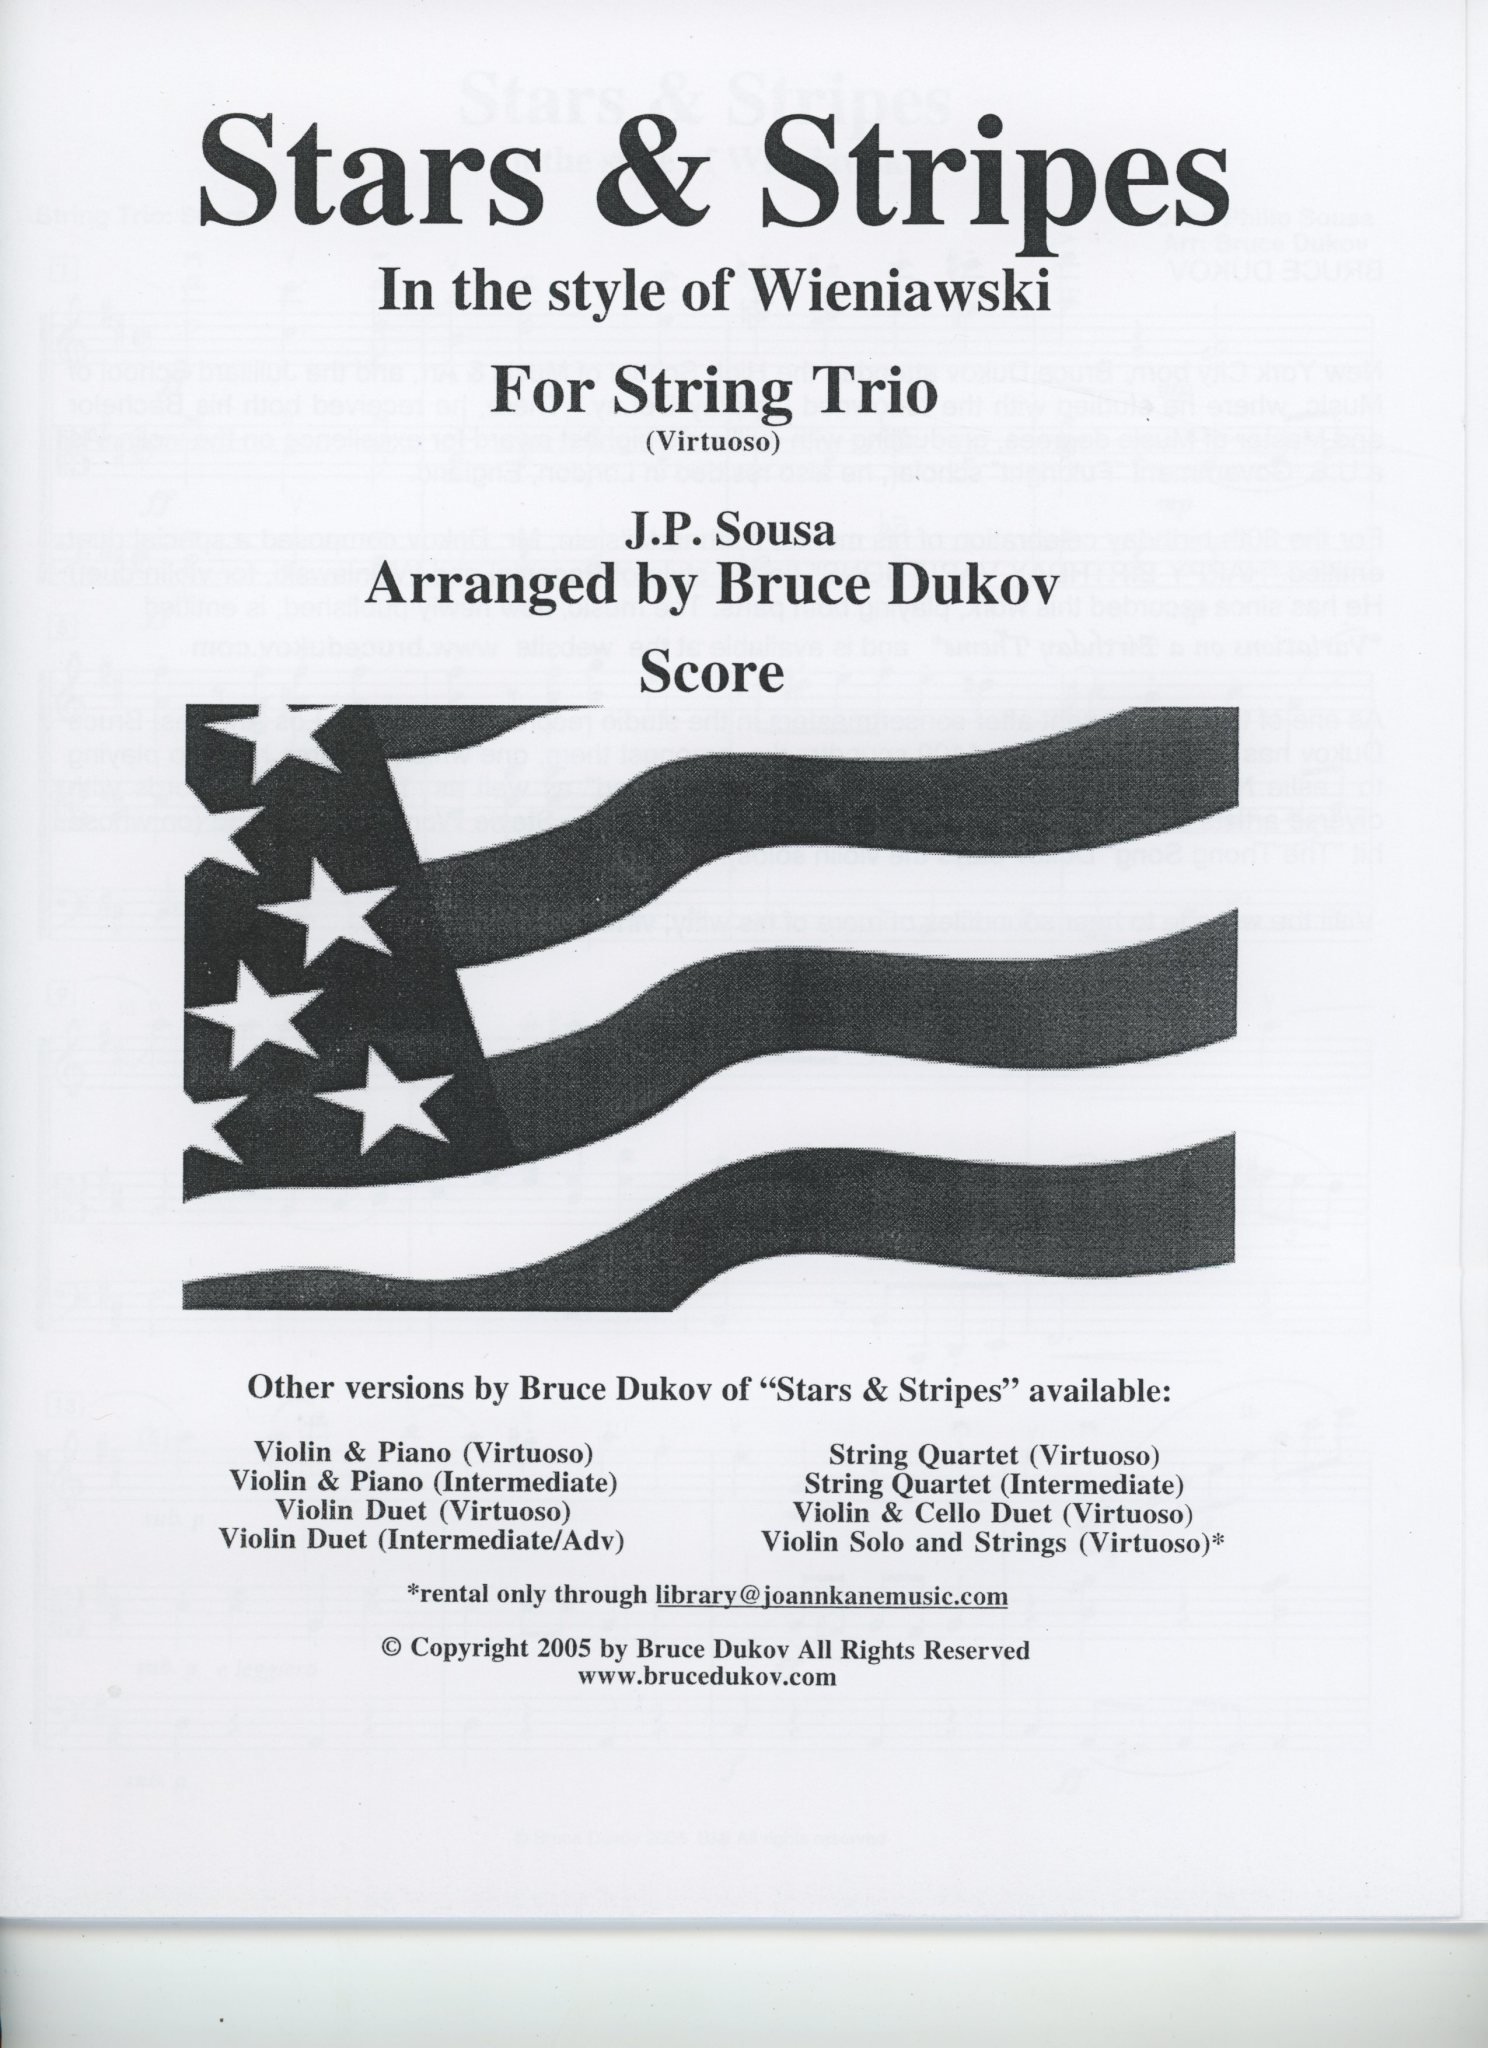 Bruce Dukov Sousa, J.P. (Bruce Dukov): Stars & Stripes Trio, in the style of Wieniawski, Virtuoso level, parts & score, (violin, viola, cello)